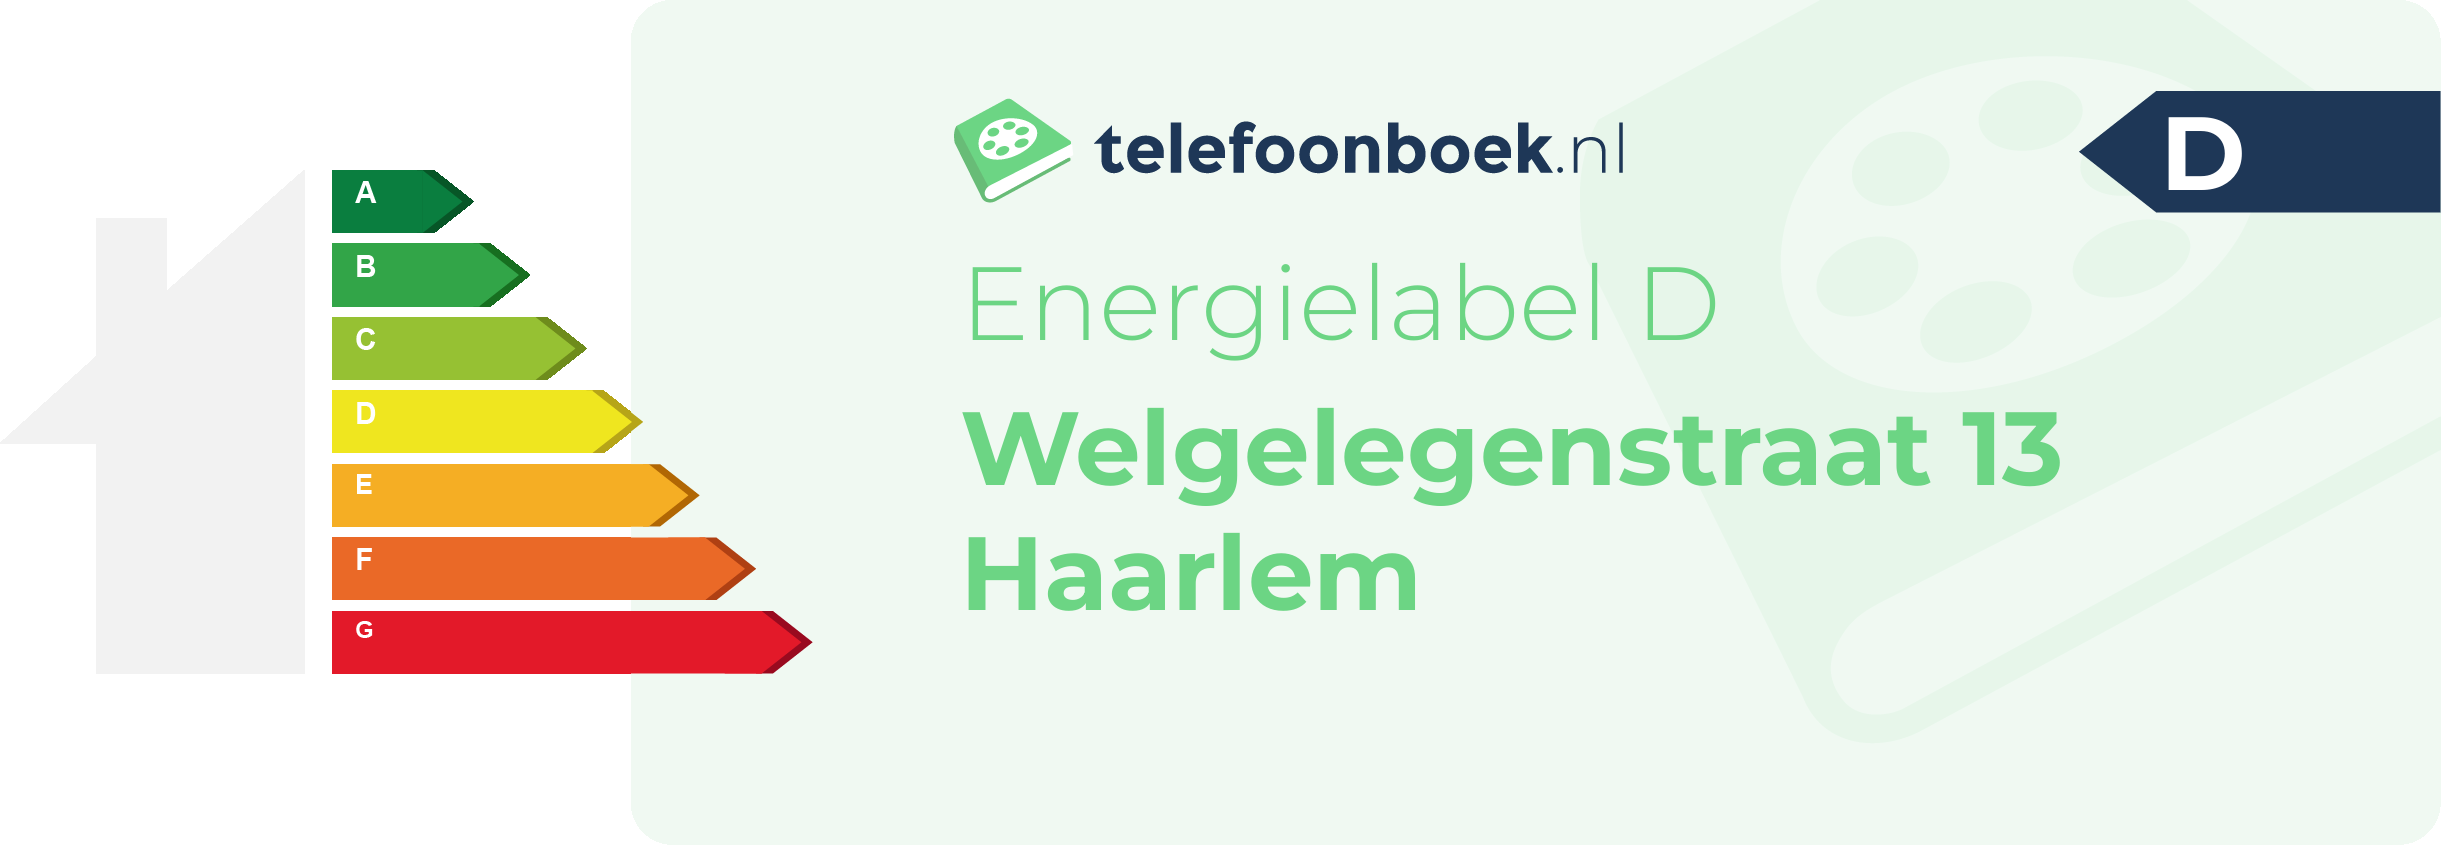 Energielabel Welgelegenstraat 13 Haarlem